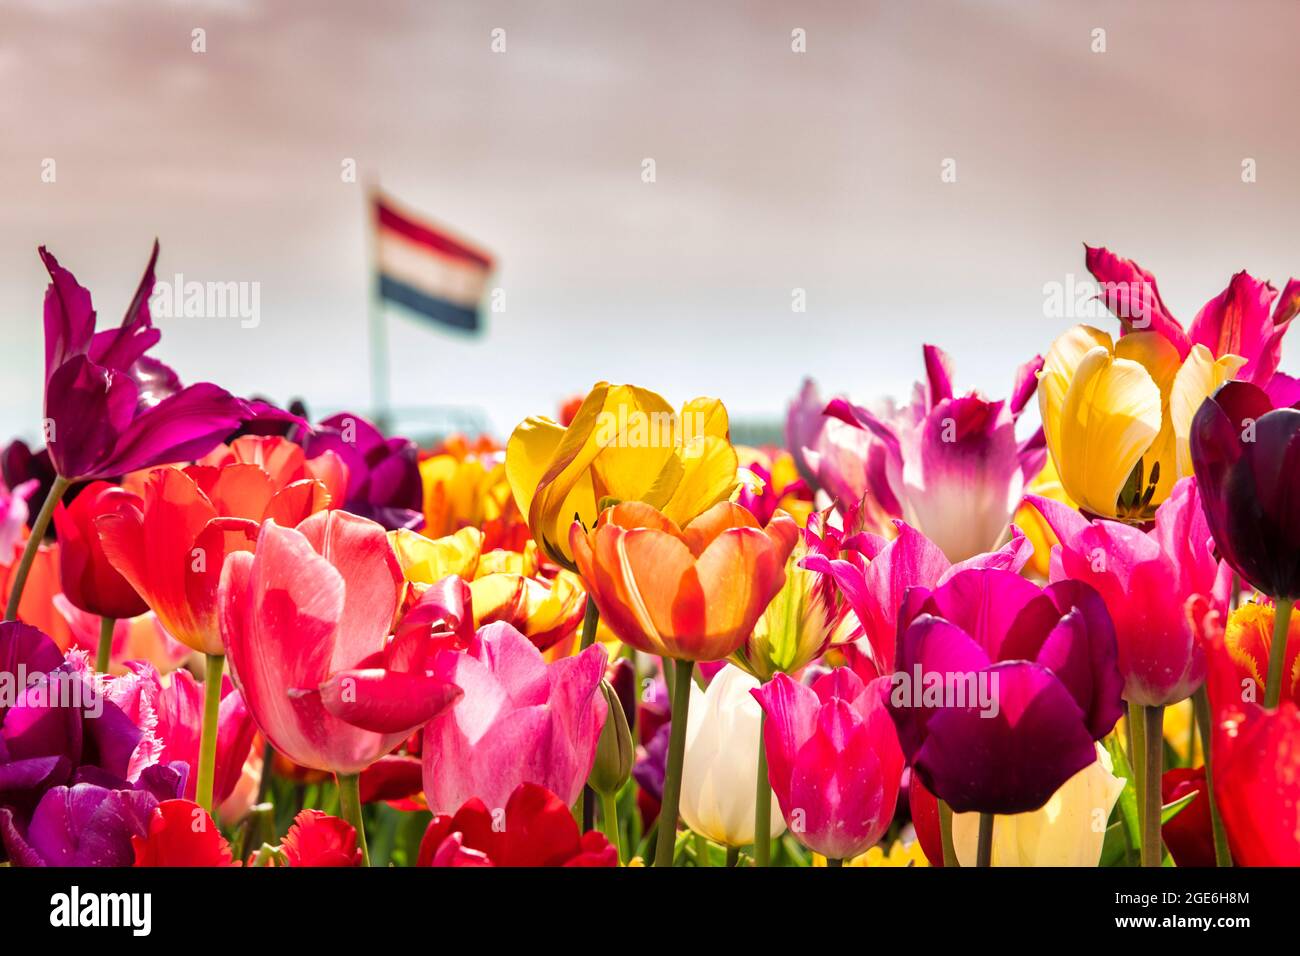 The Netherlands, Noordwijkerhout, Tulips, tulip fields. Dutch flag. Stock Photo